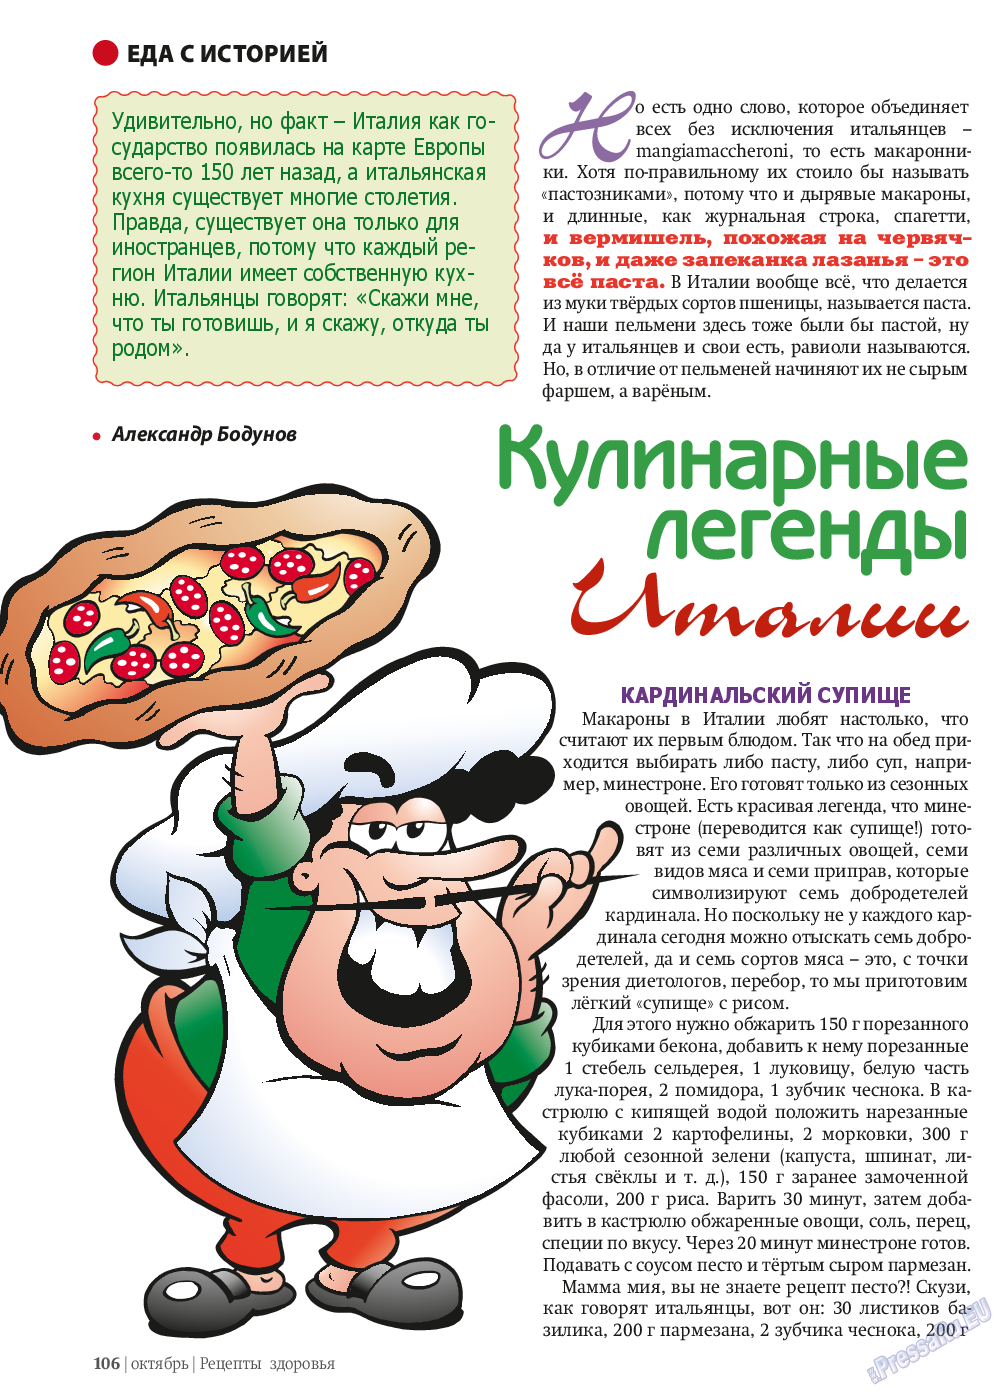 Рецепты здоровья, журнал. 2013 №10 стр.106